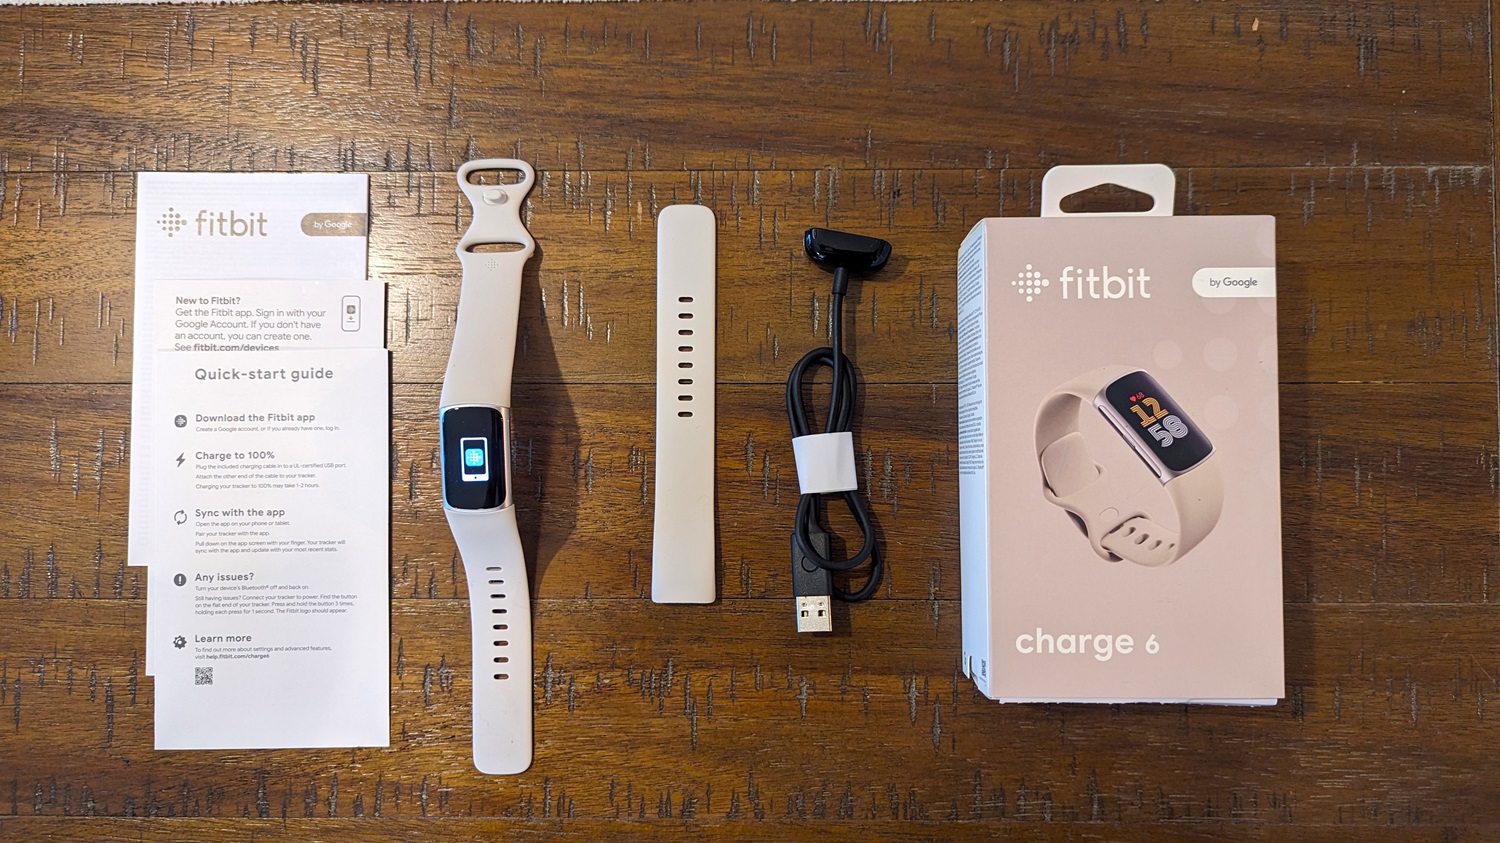 Le Charge 6 de Fitbit a tout d'une montre connectée, en format